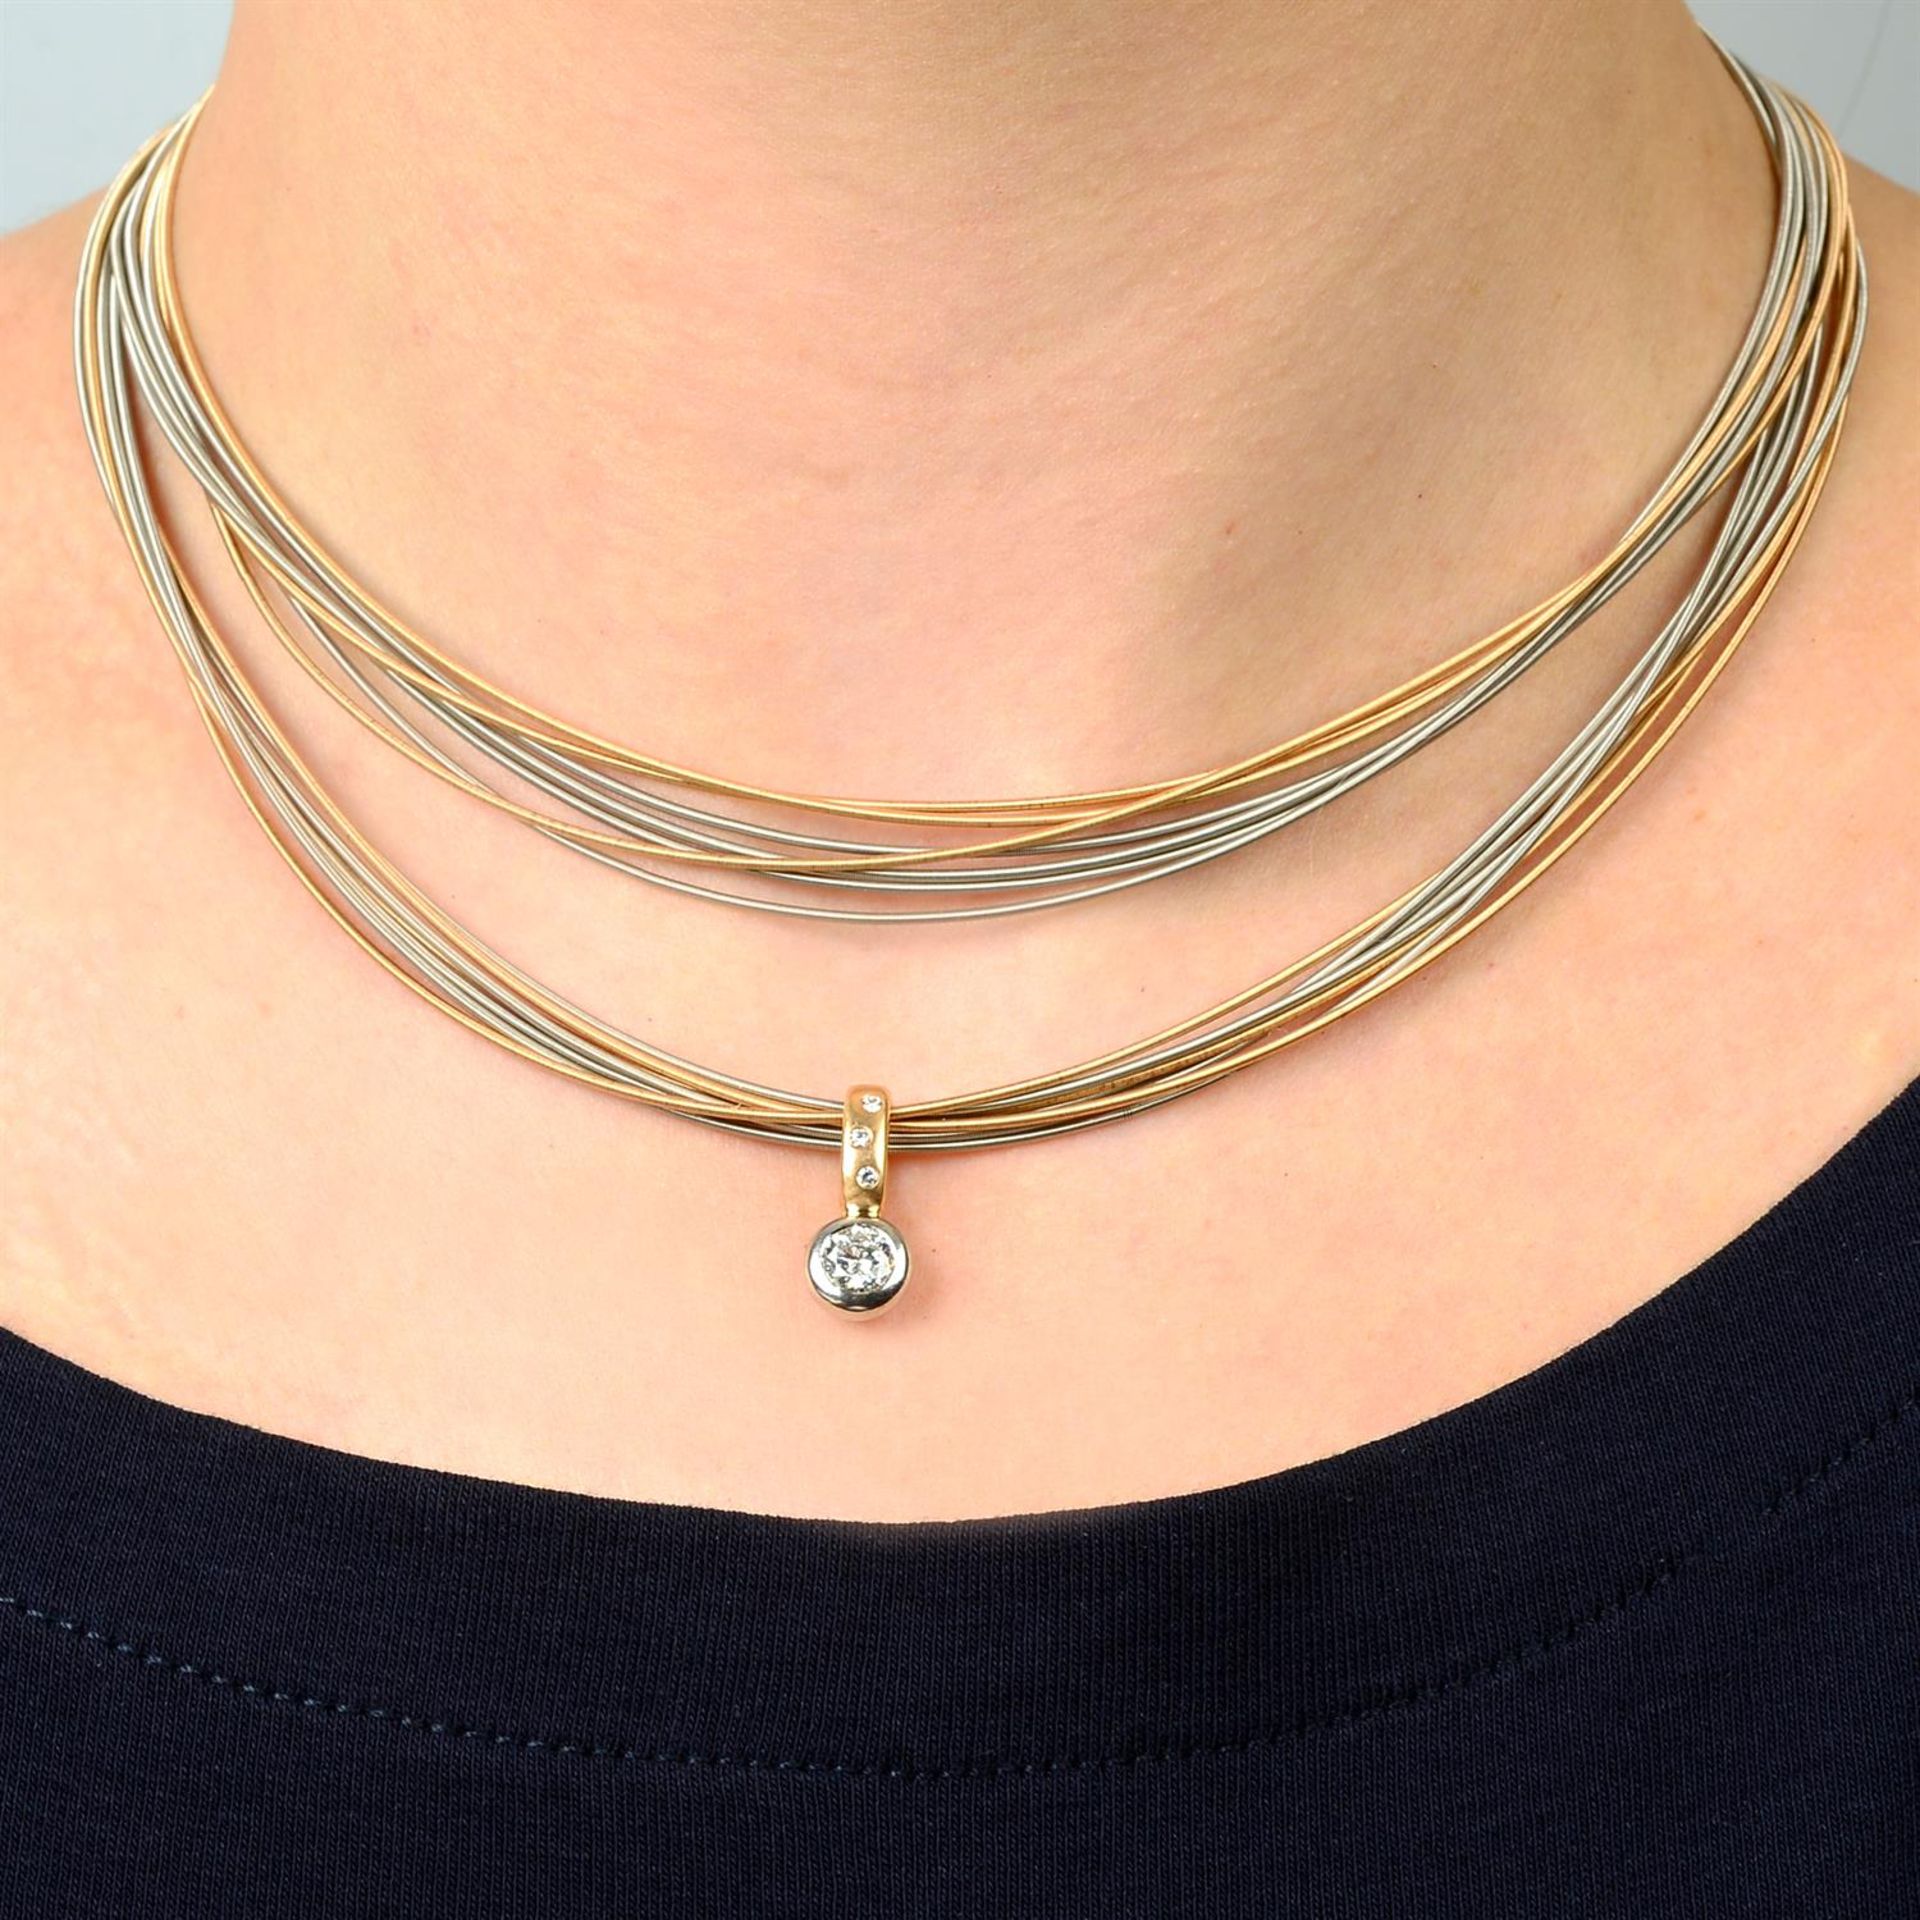 A bi-colour 18ct gold brilliant-cut diamond pendant, on multi-strand chain, by Boodles.